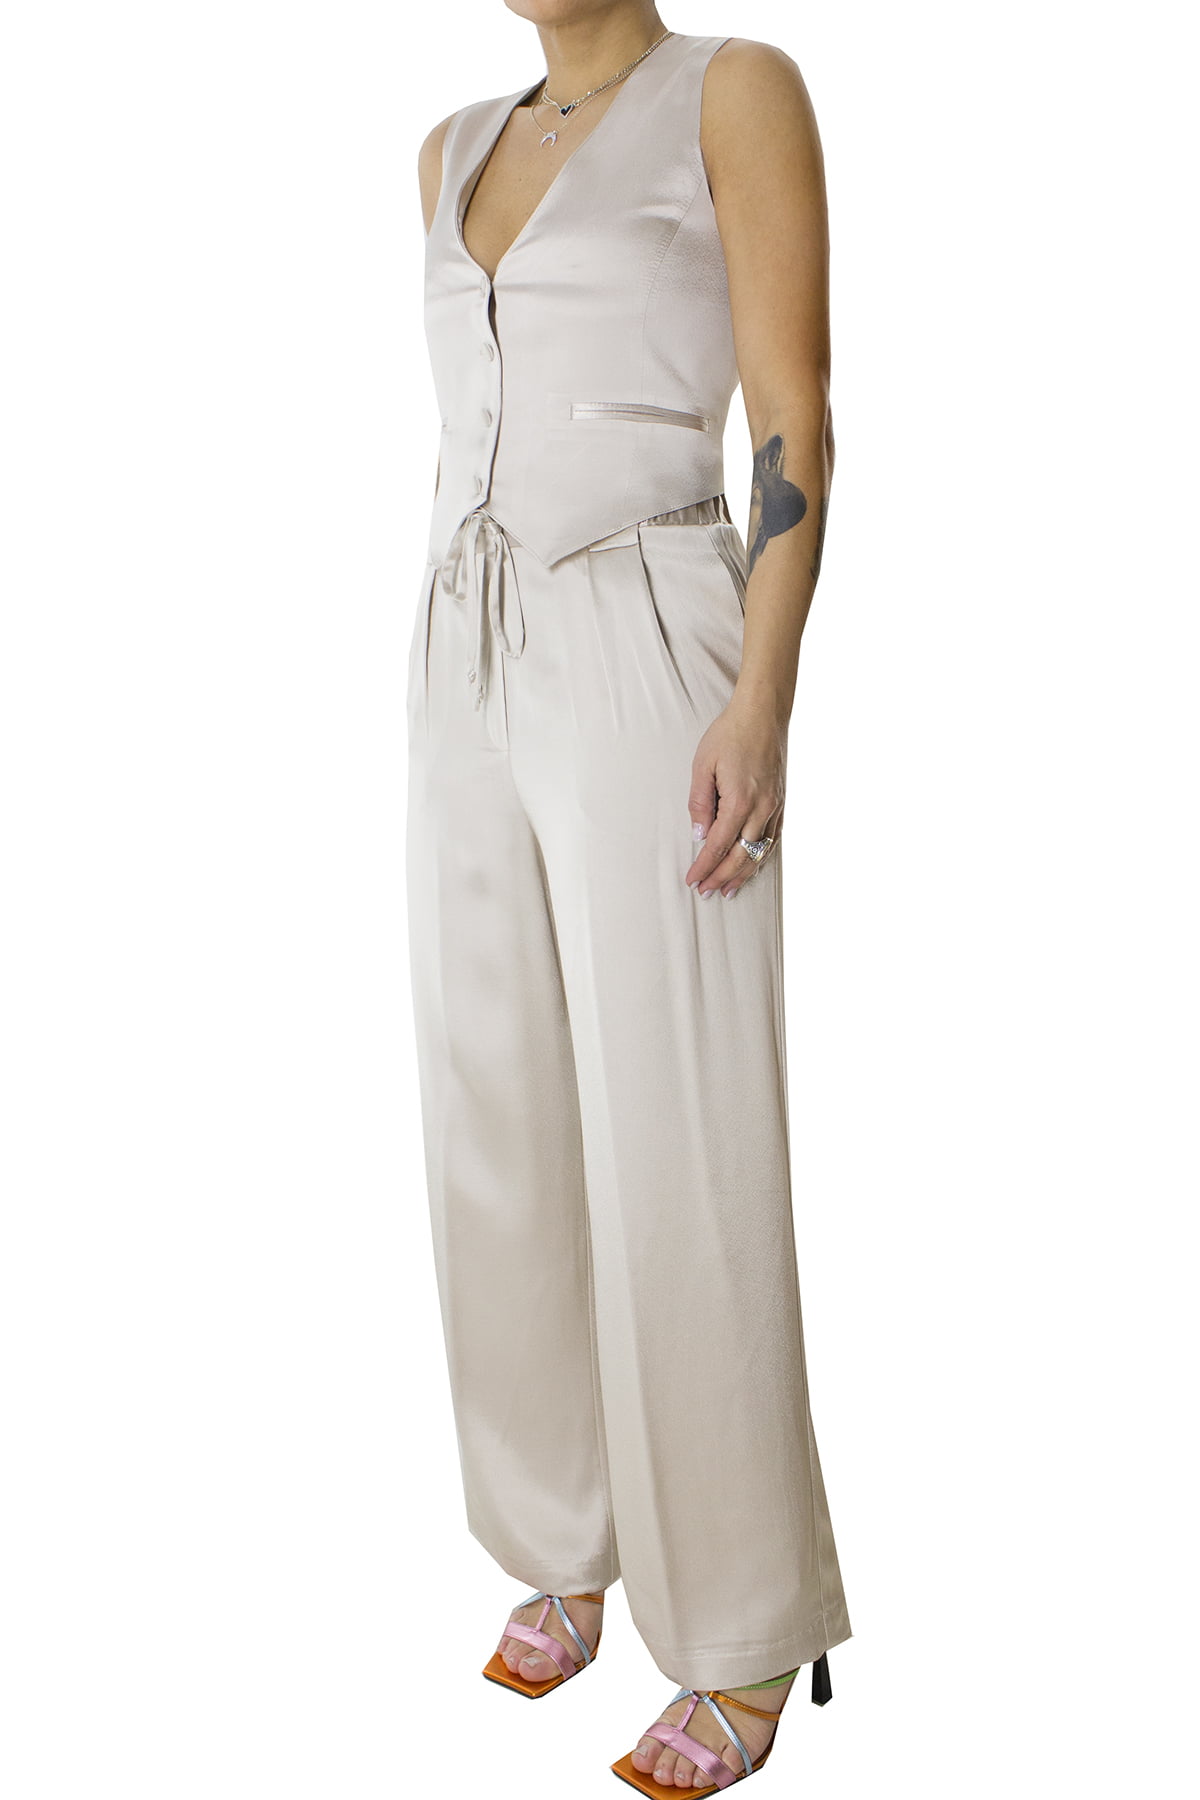 Pantalone donna palazzo in raso lucido con coulisse e elastico sul retro con tasche america